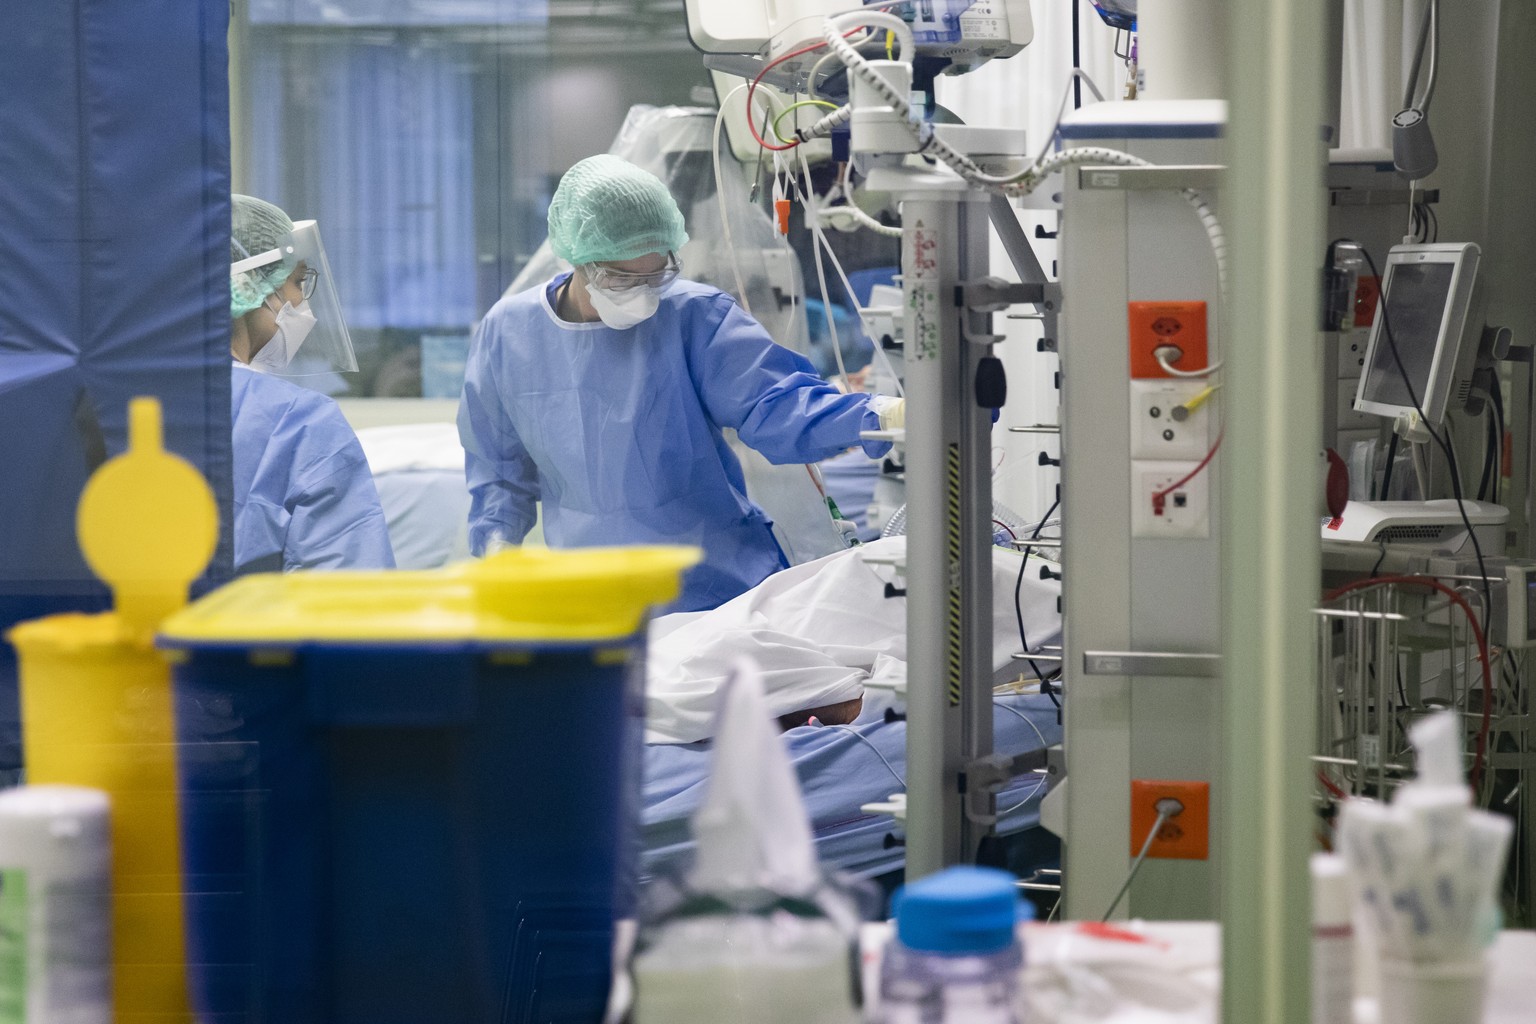 Aerzte und Pflegende kuemmern sich um Covid-Patienten in einer Intensivstation im Universitaetsspital Basel, am Montag, 28. Dezember 2020, in Basel. (KEYSTONE/Peter Klaunzer)